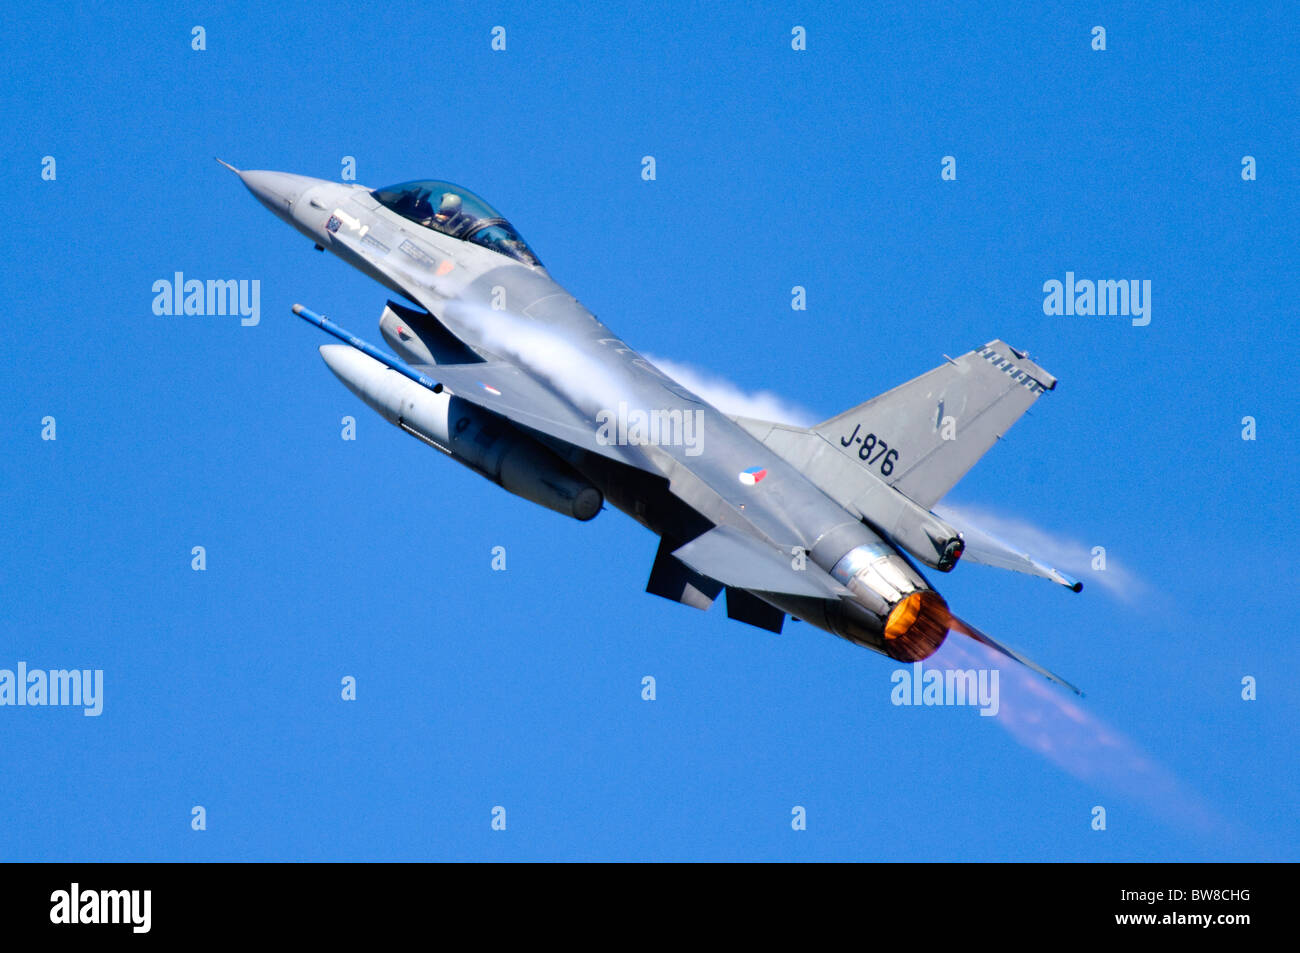 F-16 Fighting Falcon Jet Fighter von der Royal Netherlands Air Force betrieben klettere mit vollen Nachbrenner nach nehmen ab Stockfoto